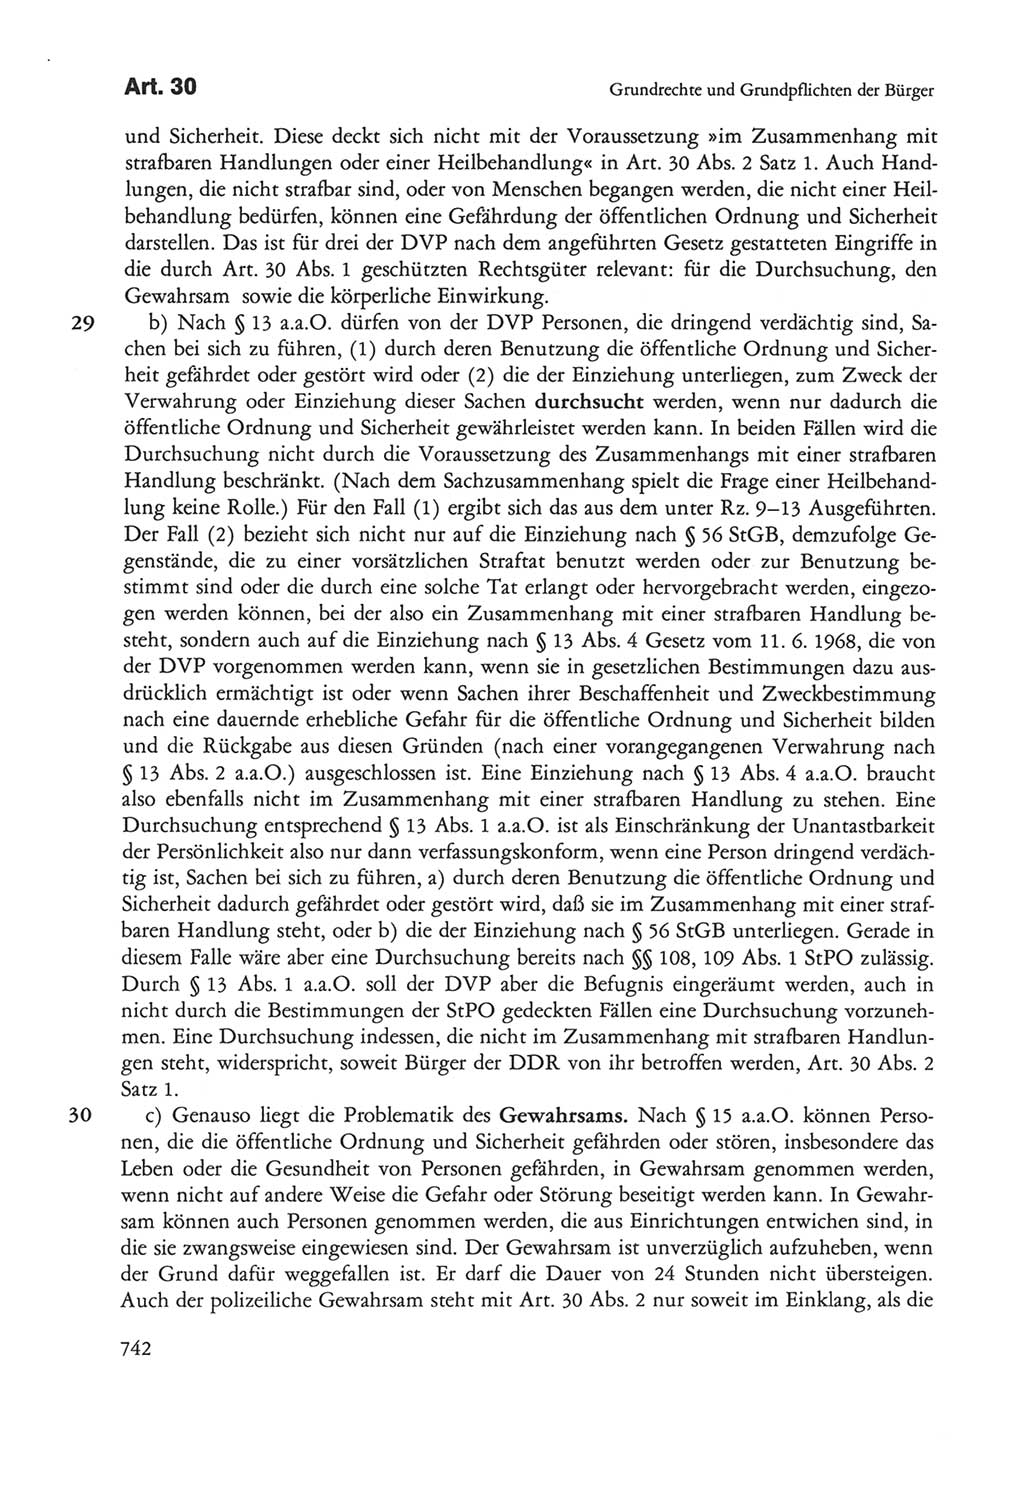 Die sozialistische Verfassung der Deutschen Demokratischen Republik (DDR), Kommentar 1982, Seite 742 (Soz. Verf. DDR Komm. 1982, S. 742)